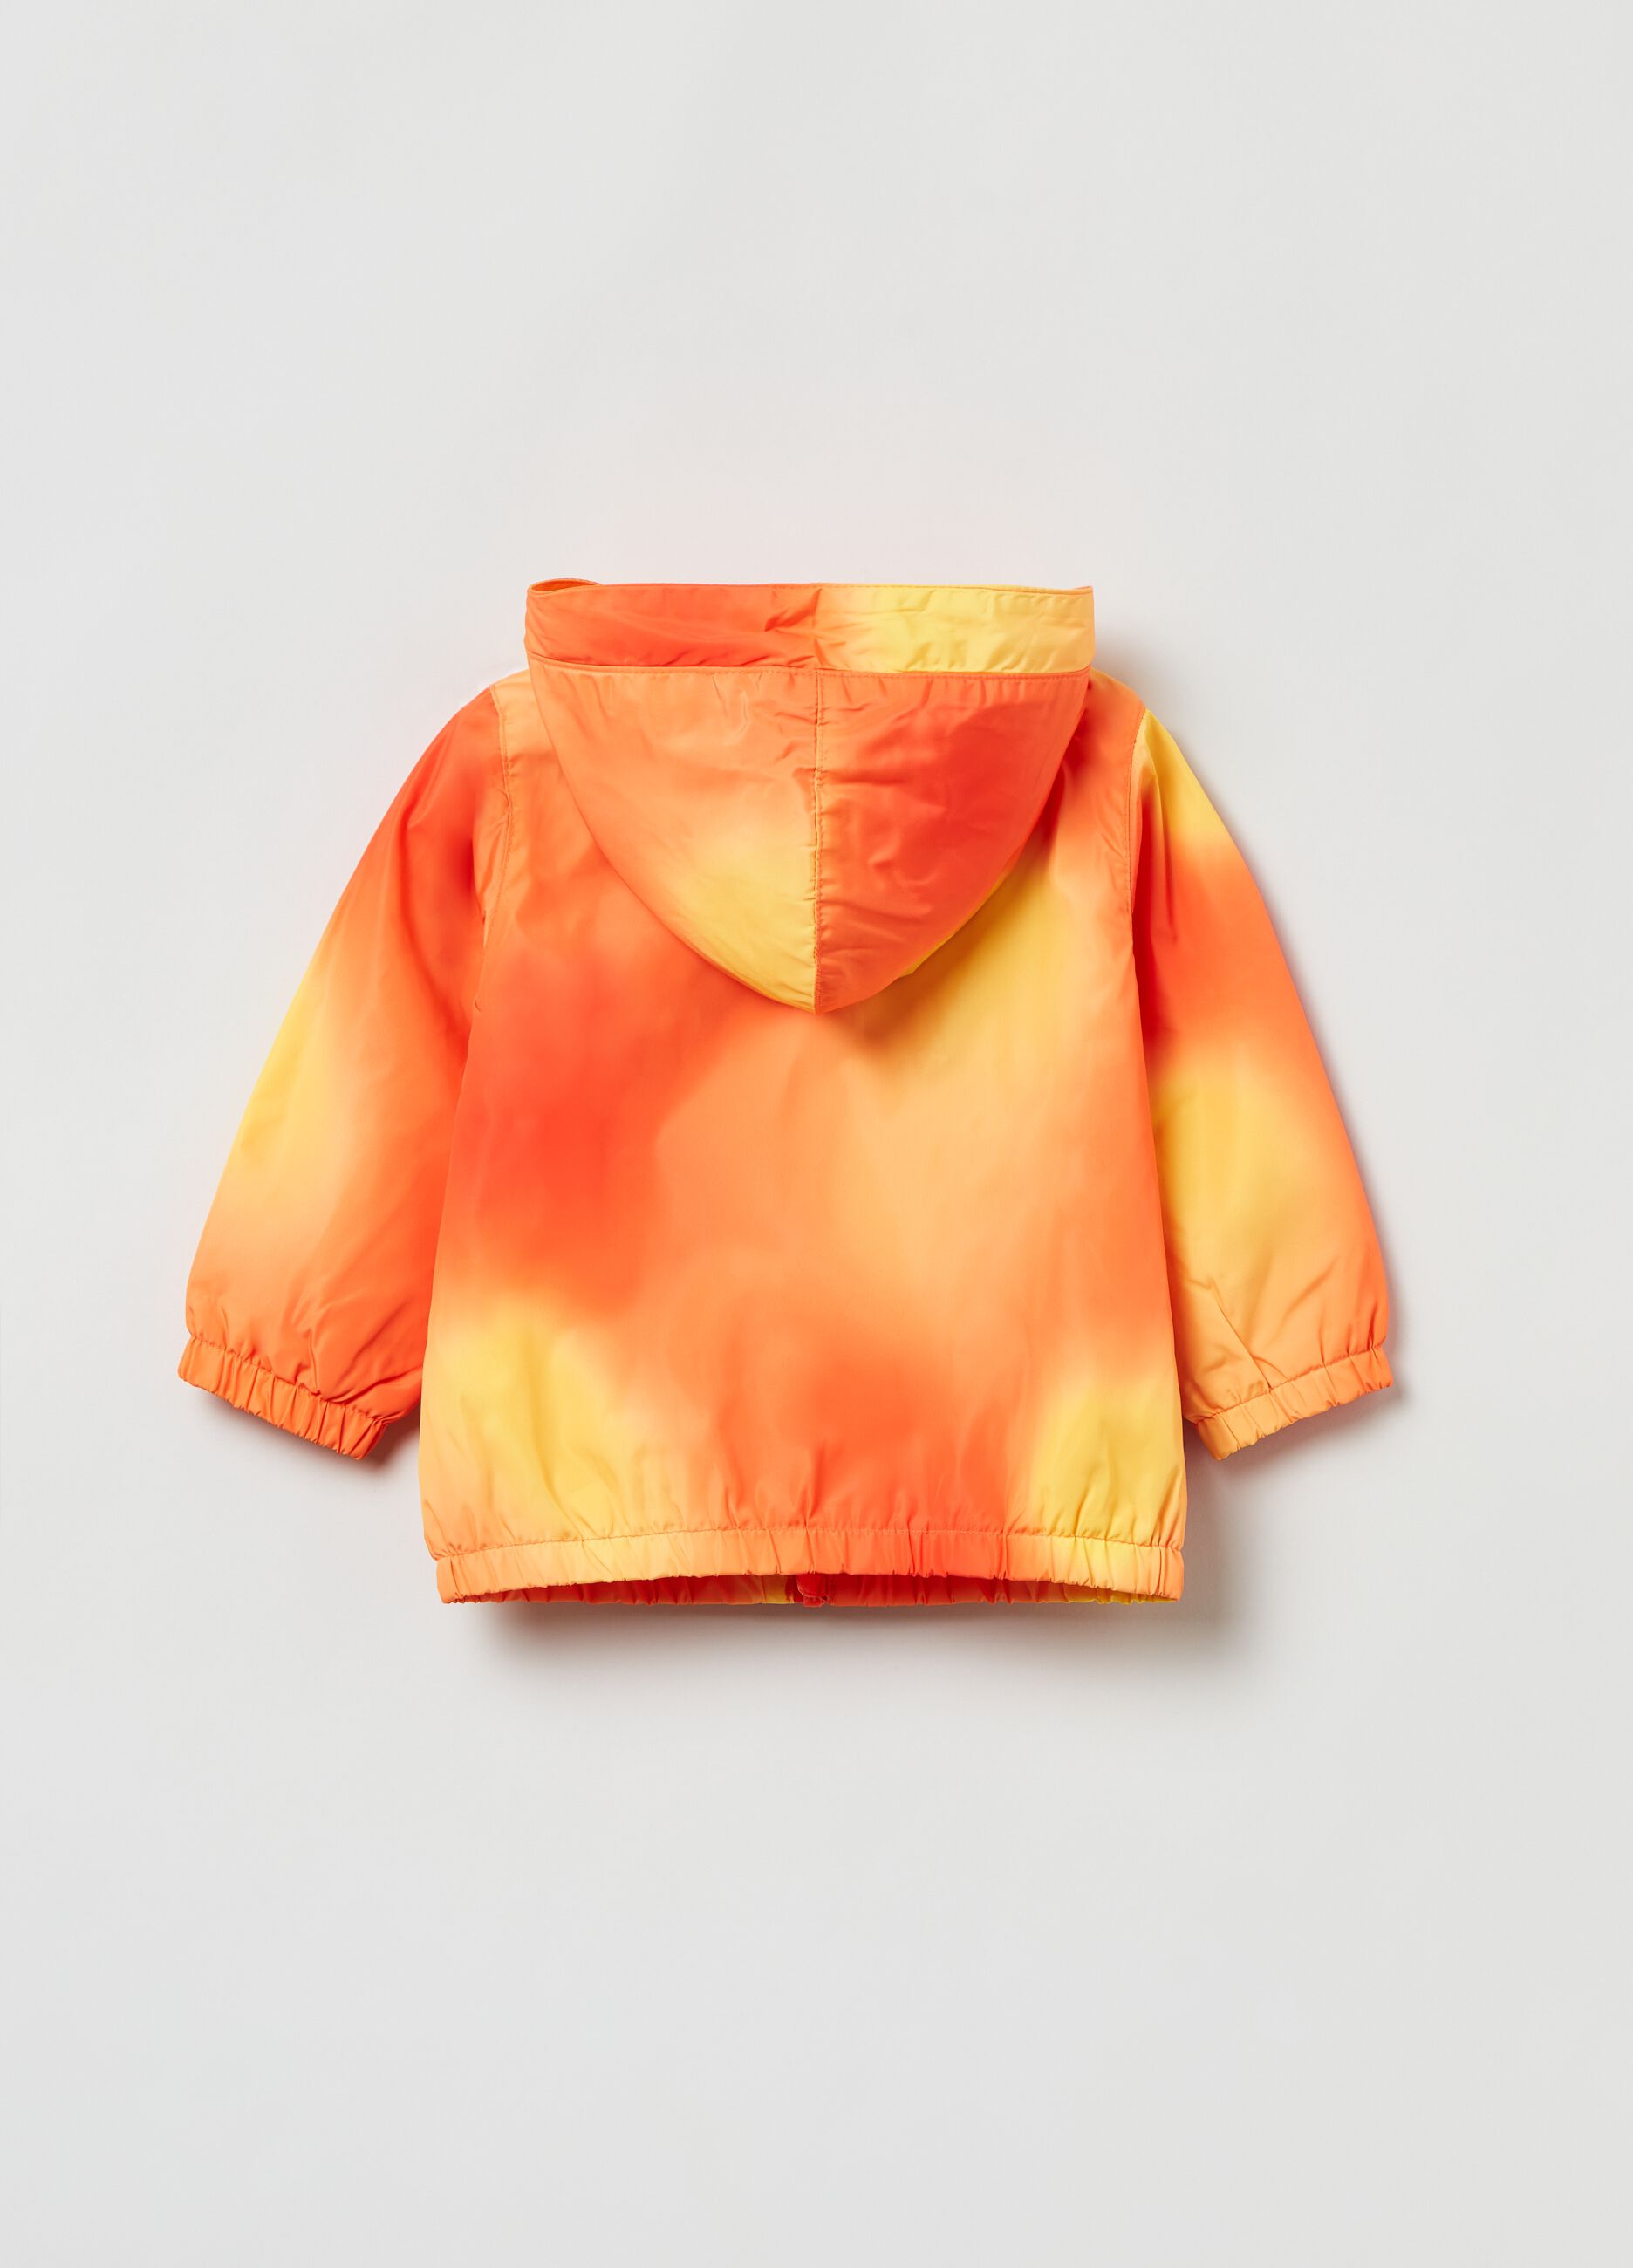 Waterproof jacket in tie dye pattern.